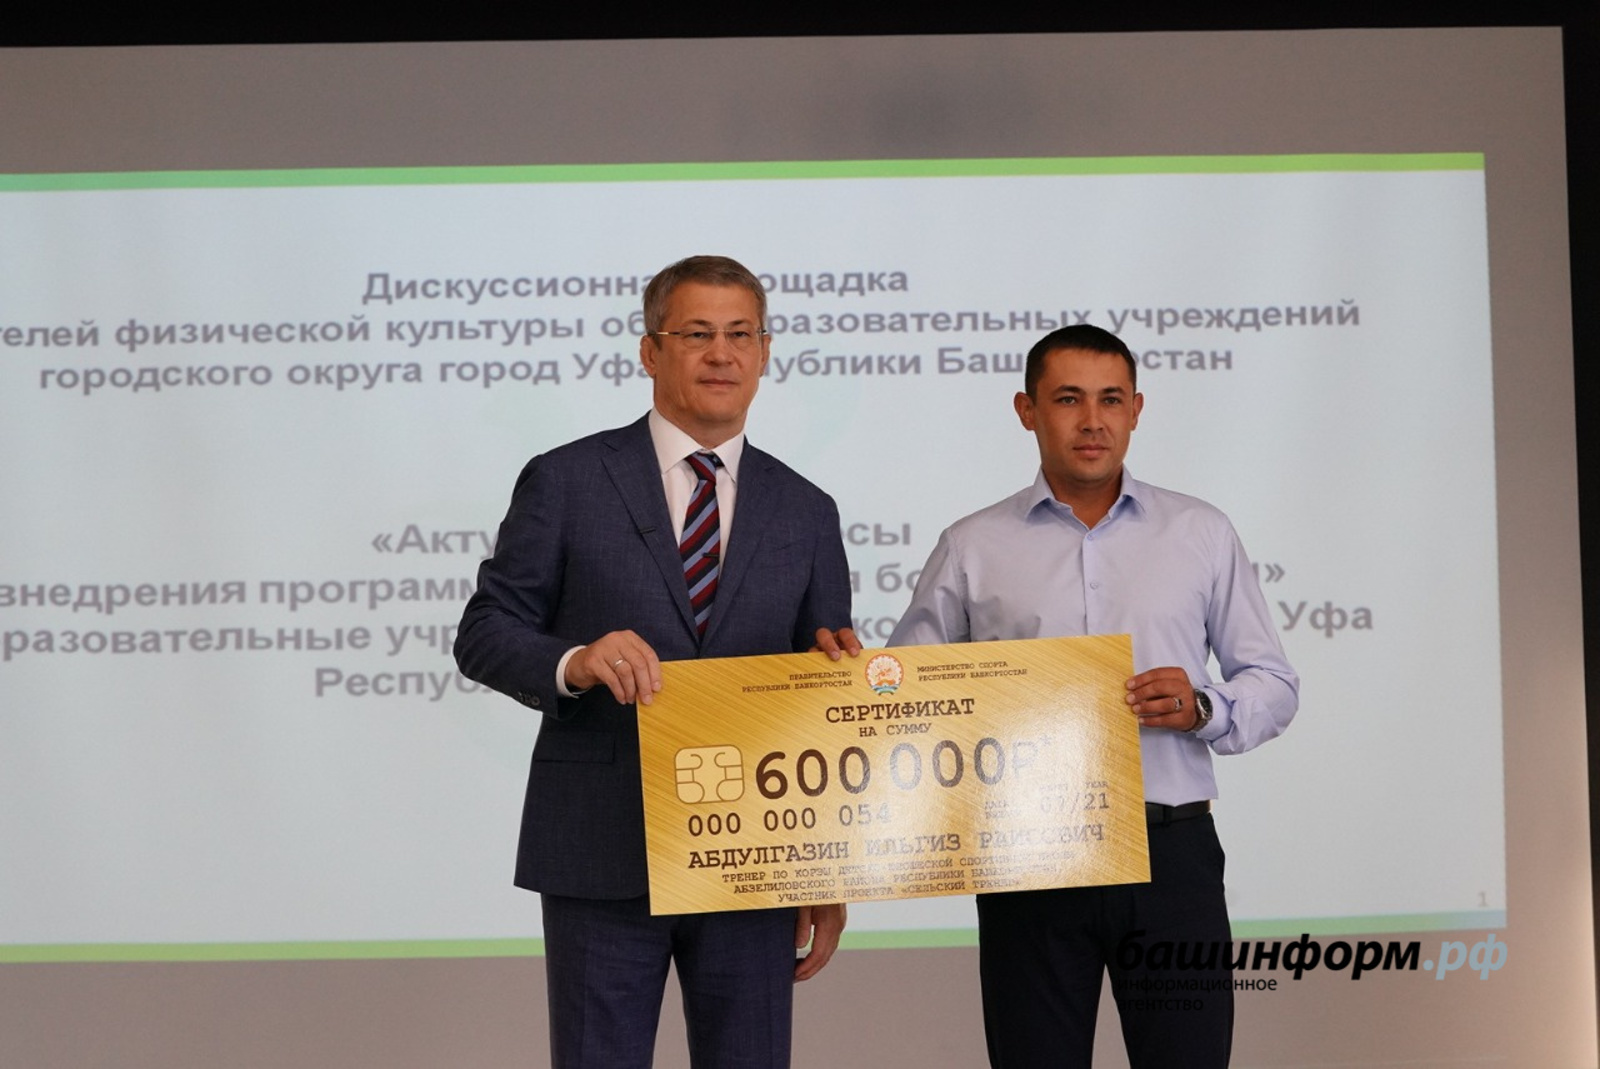 Радий Хабиров: К 2024 году секции спортивной борьбы появятся в 200 школах Башкирии